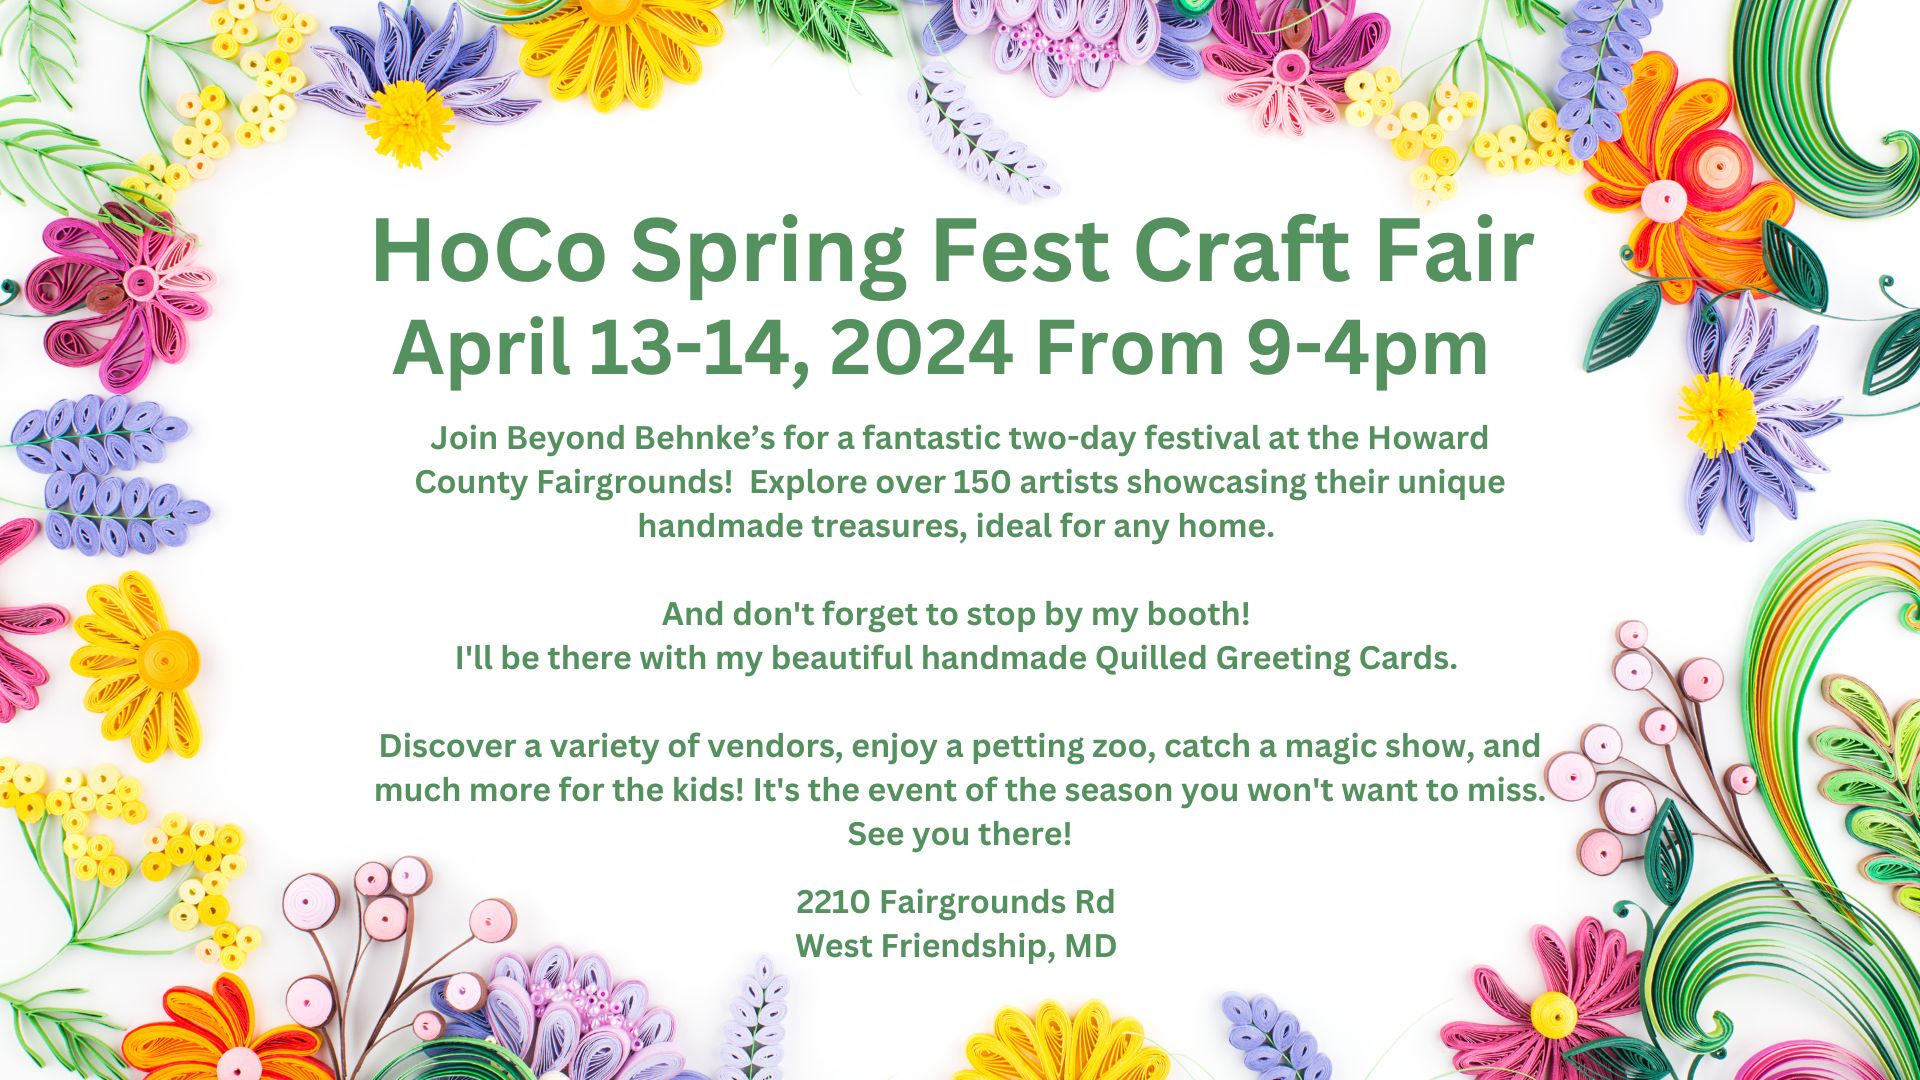 HoCo Spring Fest Craft Fair